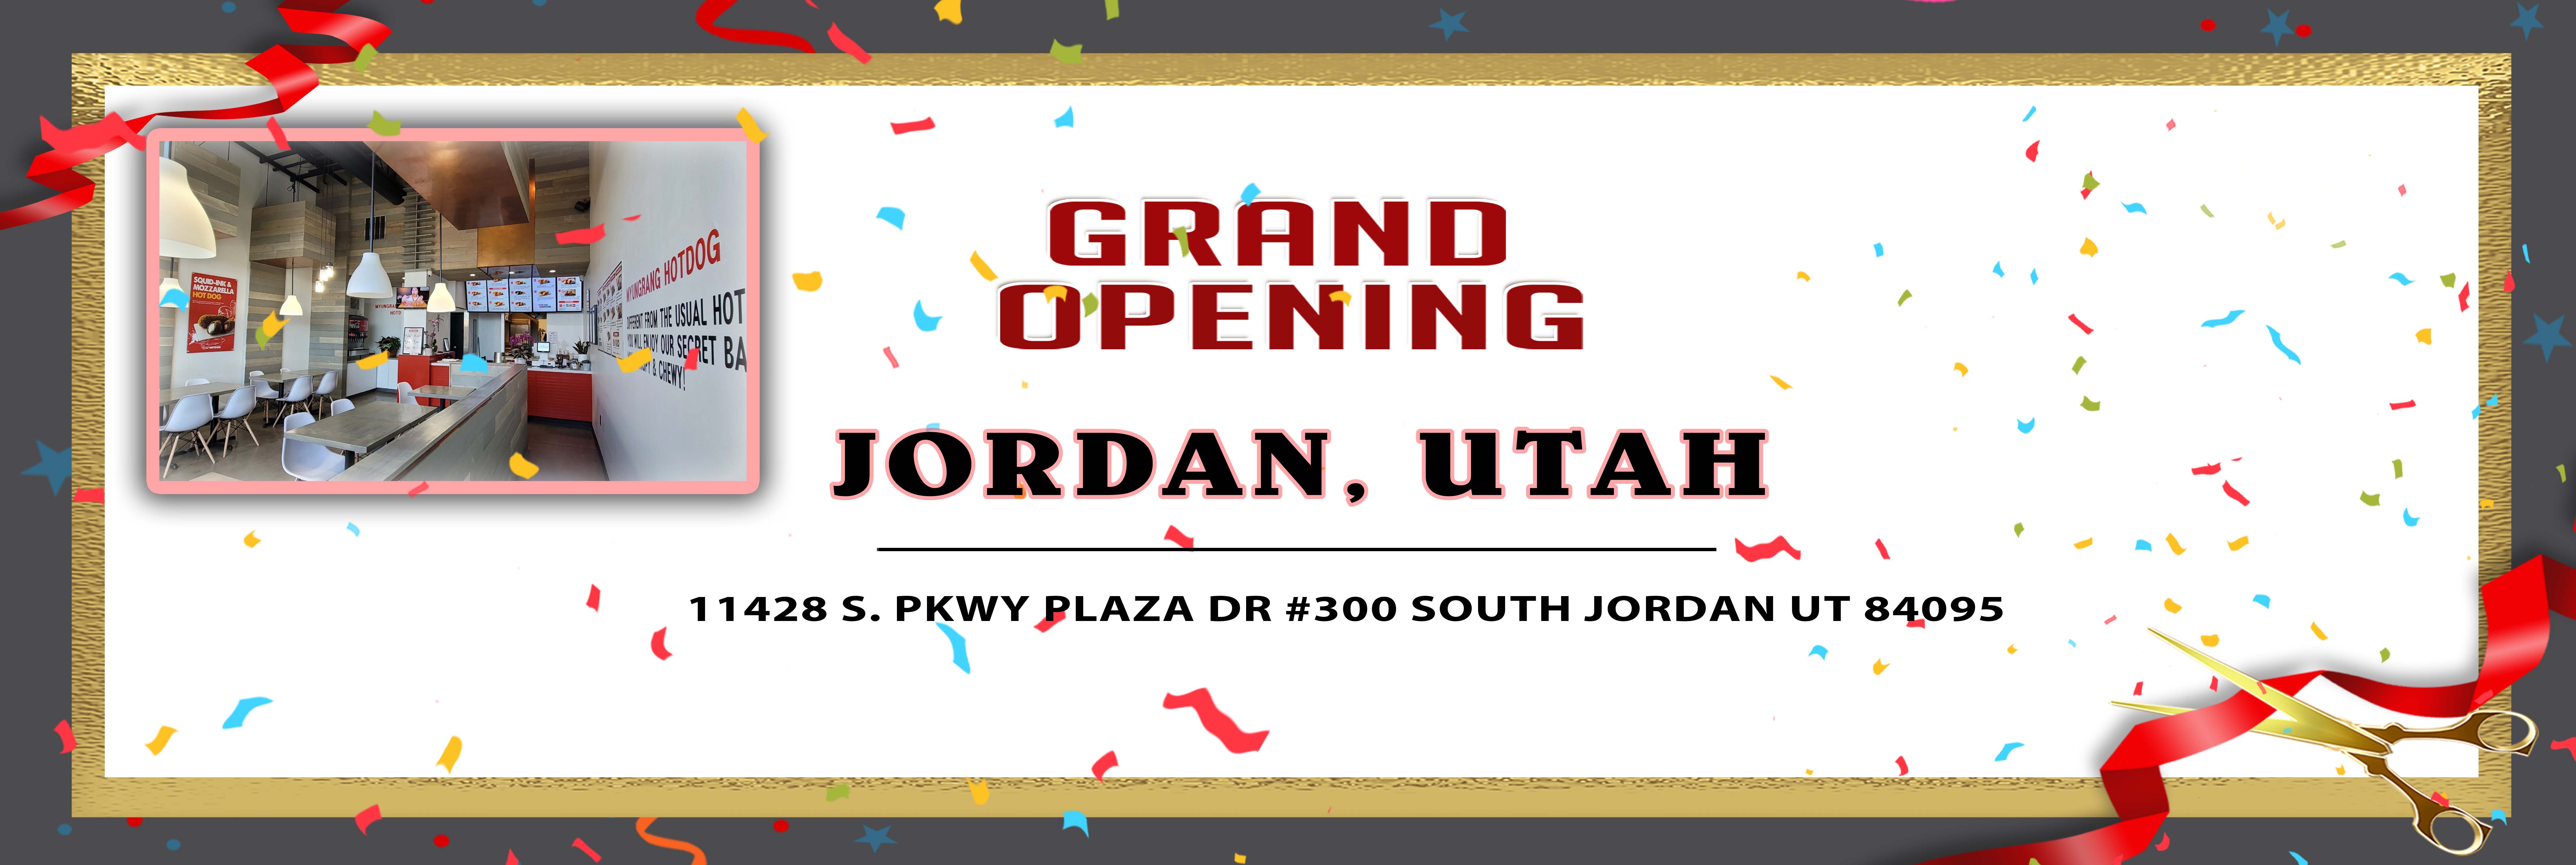 Grand Opening Utah